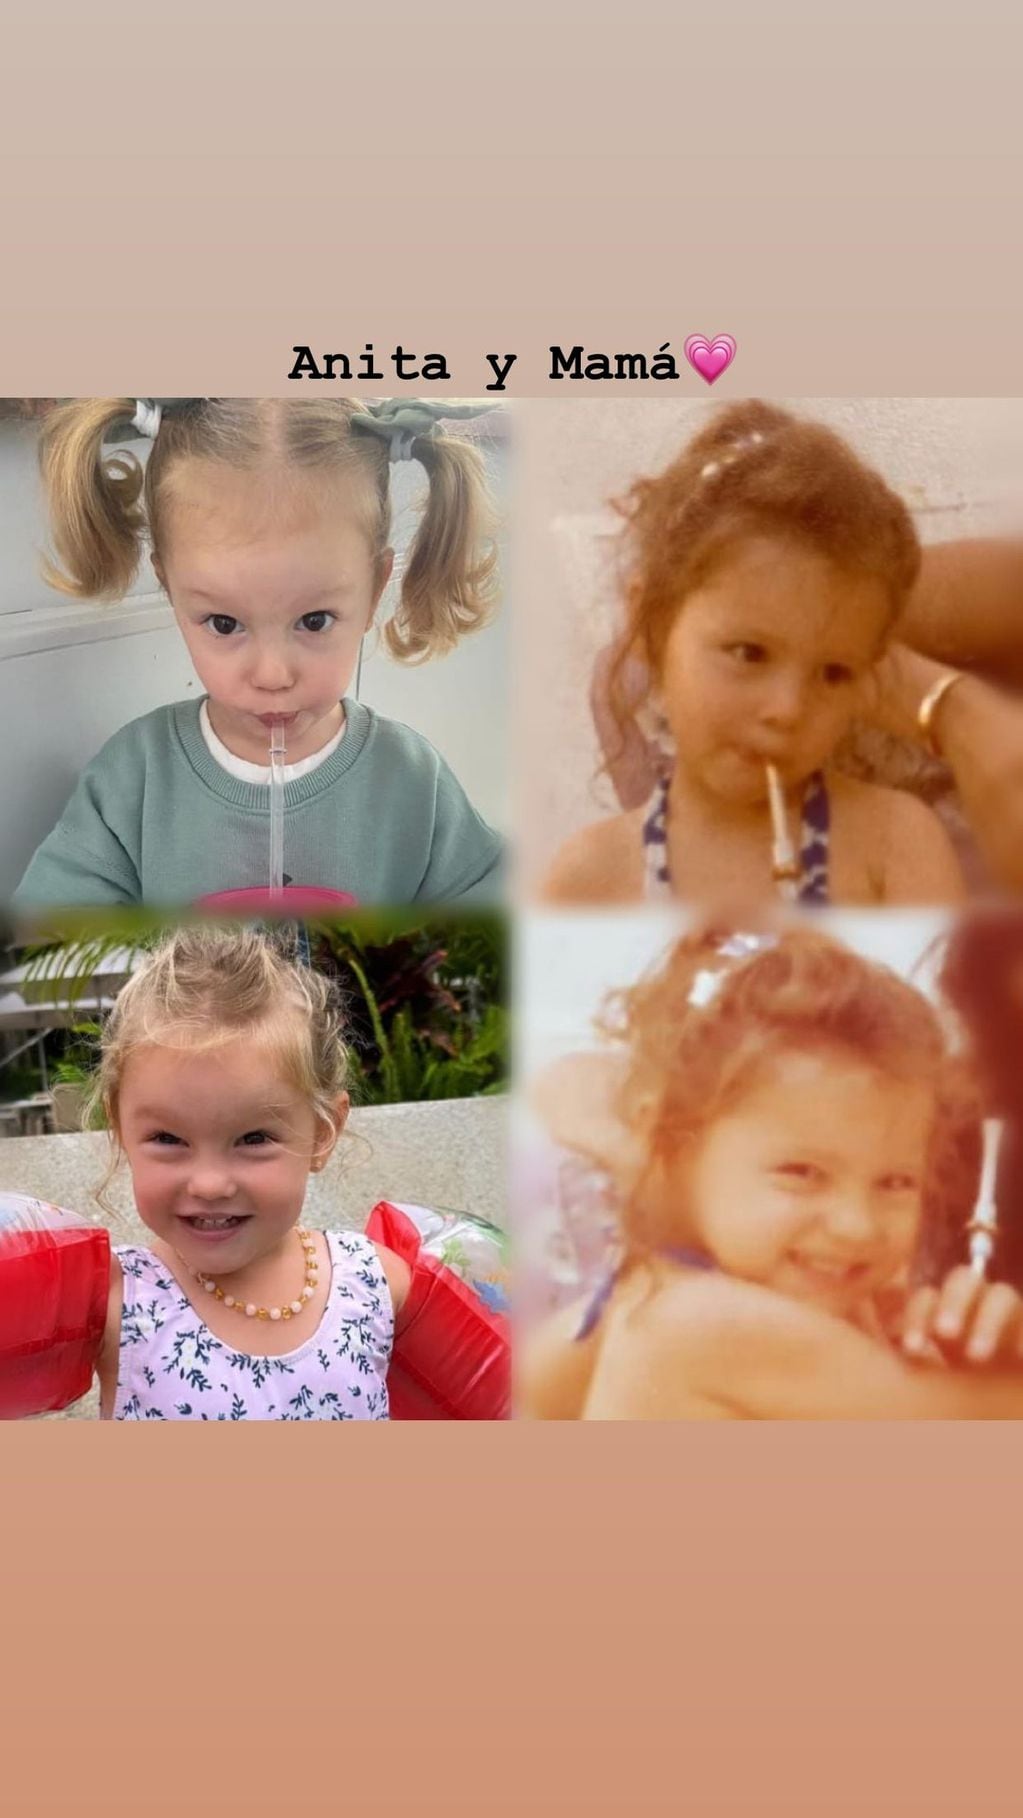 Las fotos que demuestran el parecido entre la modelo y su hija.